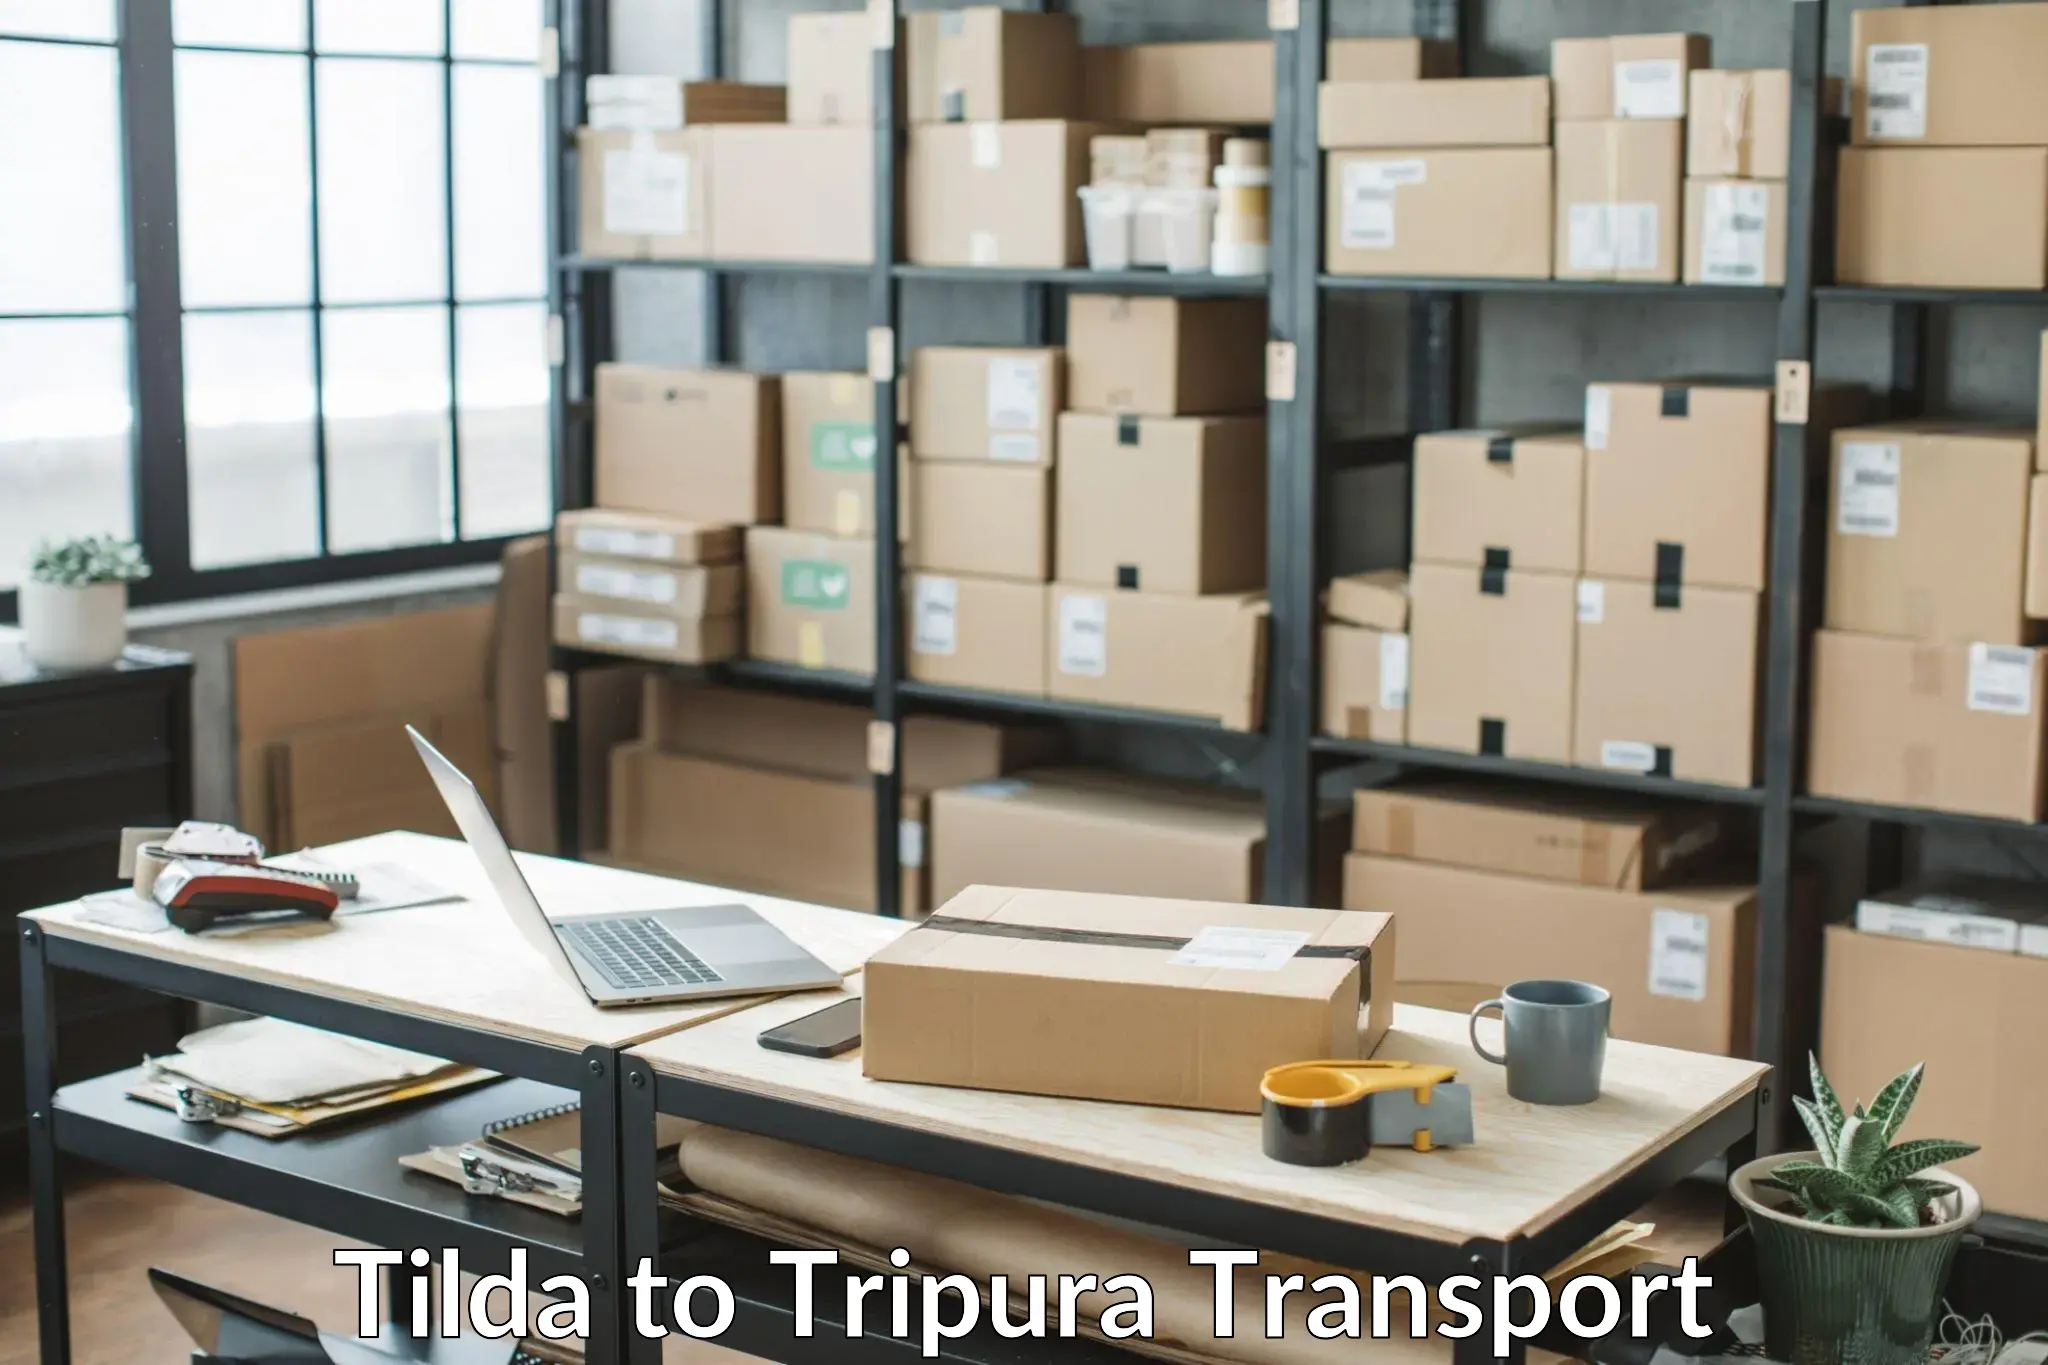 Road transport online services Tilda to Udaipur Tripura